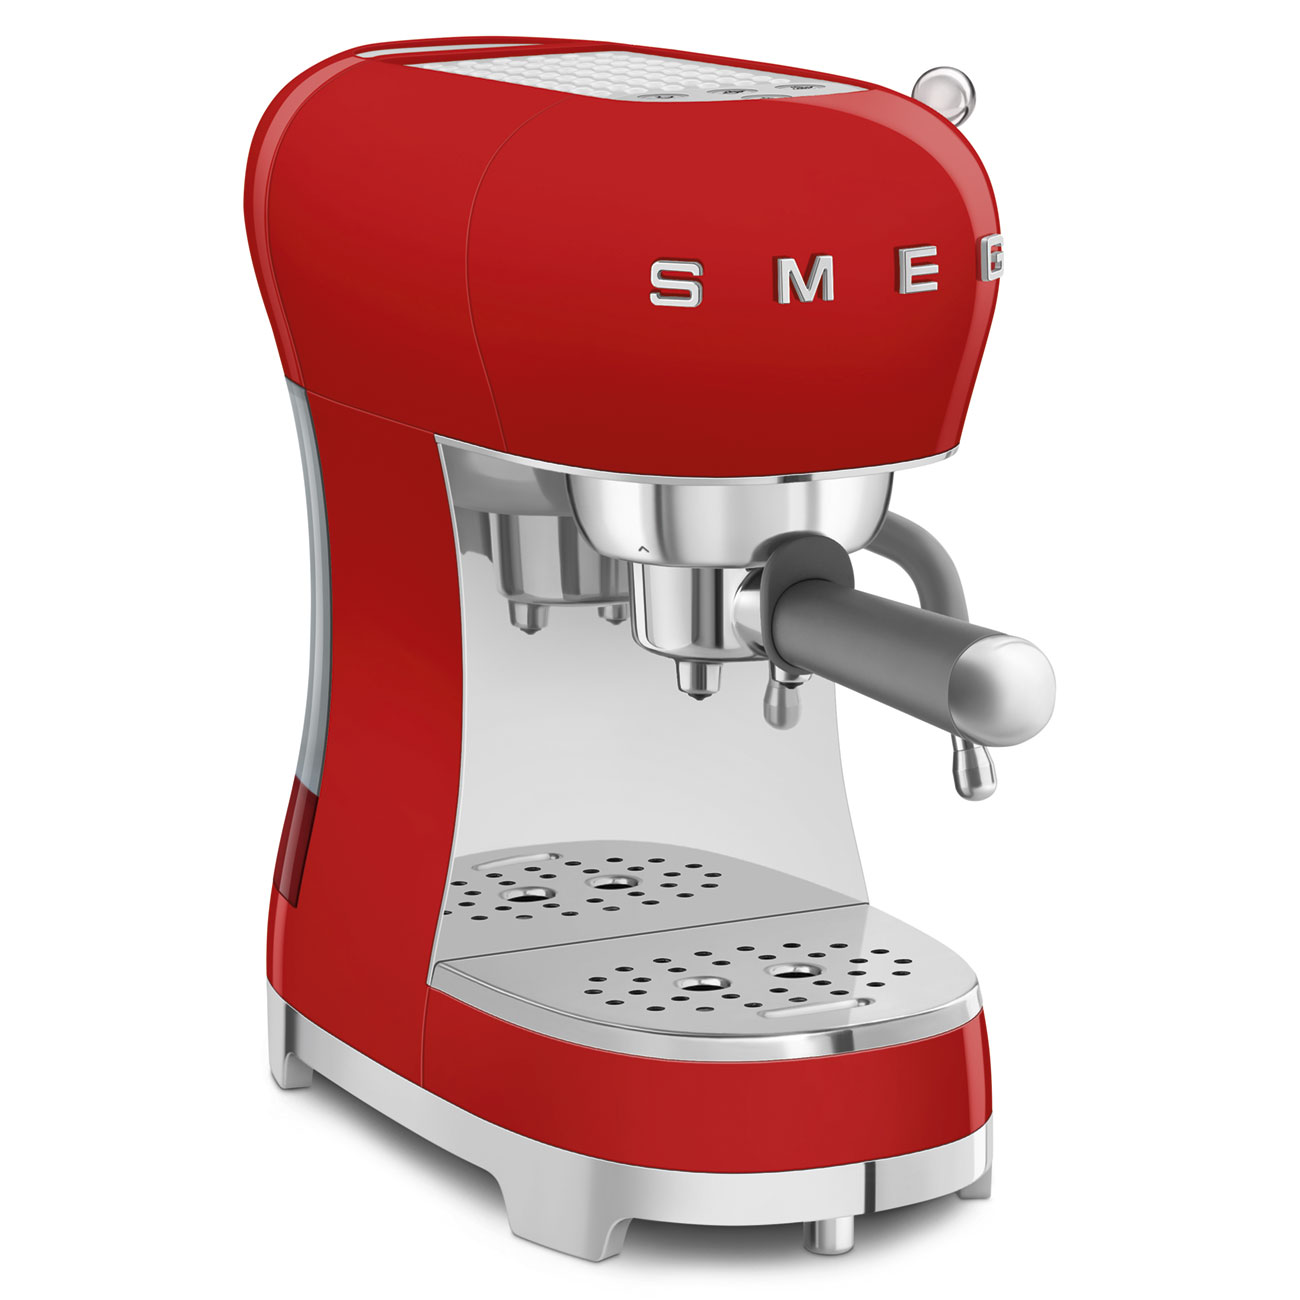 SMEG Espressomaschine mit Siebträger50's Style Version 2 Espressomaschinen SMEG Rot   - Rheinland.Coffee